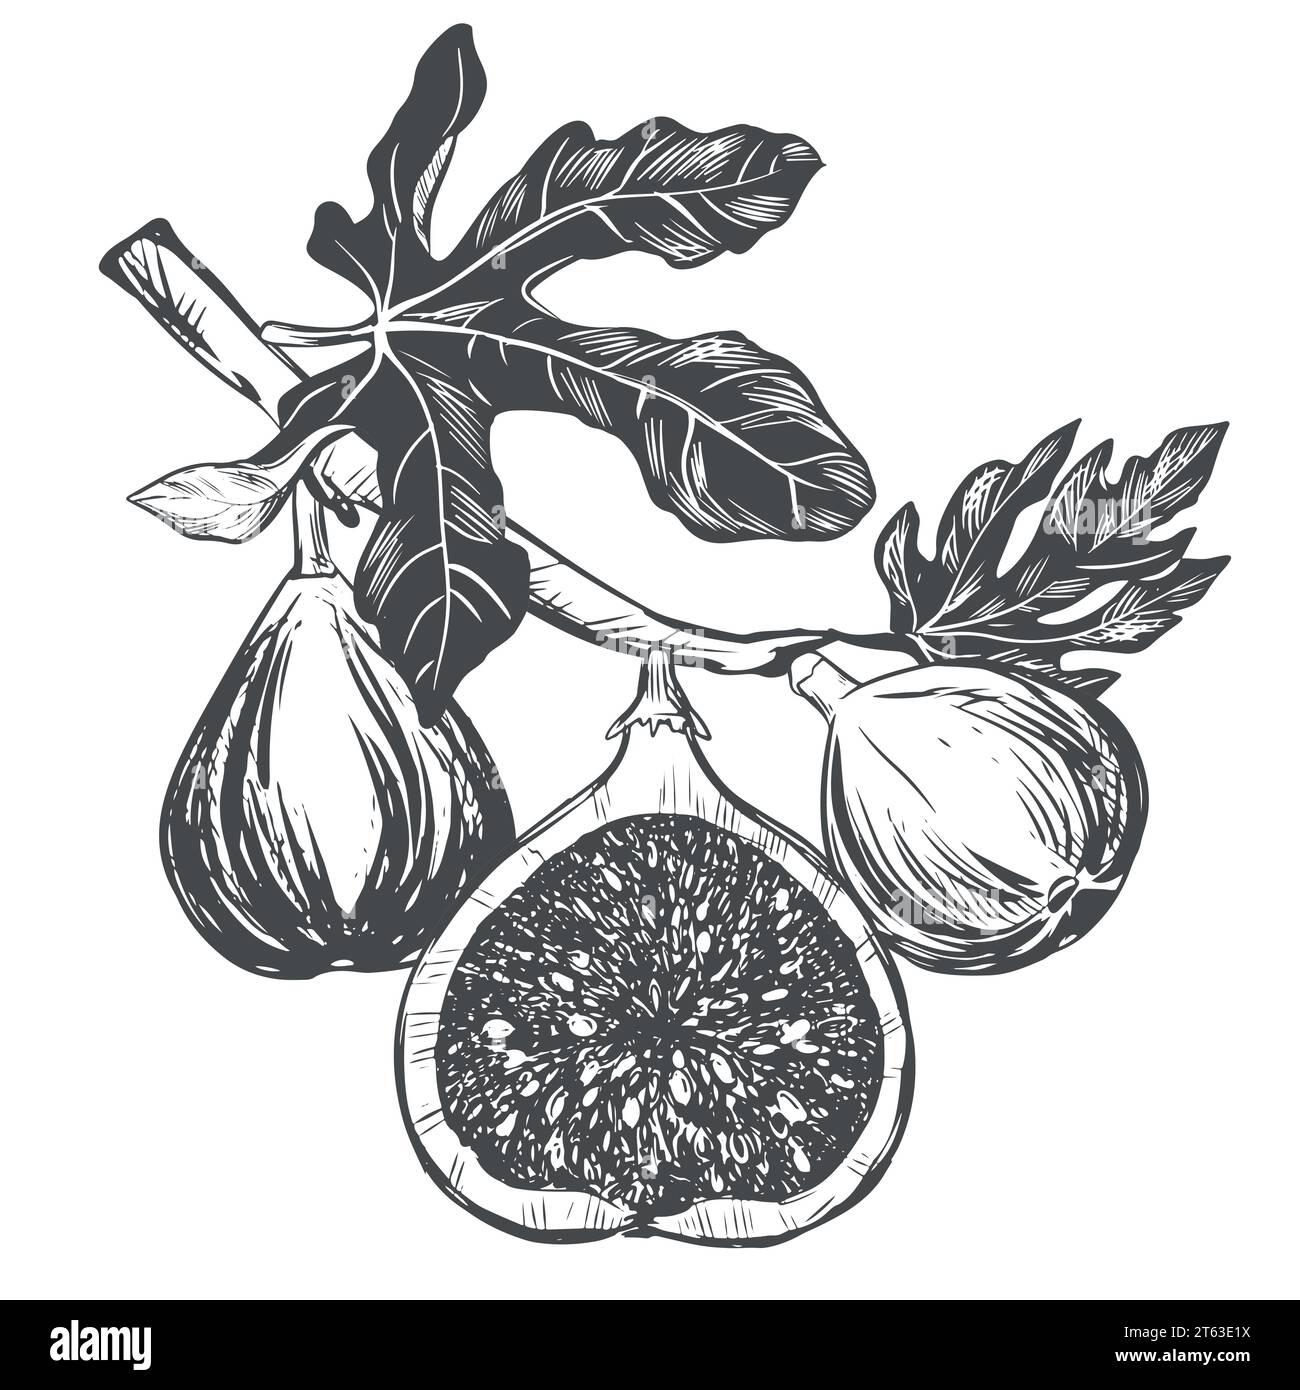 Branche Fig sur fond blanc. Plante tropicale, fruit cru, feuille. Croquis de fruits sucrés. Image vectorielle dans le style de gravure. Convient pour l'emballage des Illustration de Vecteur